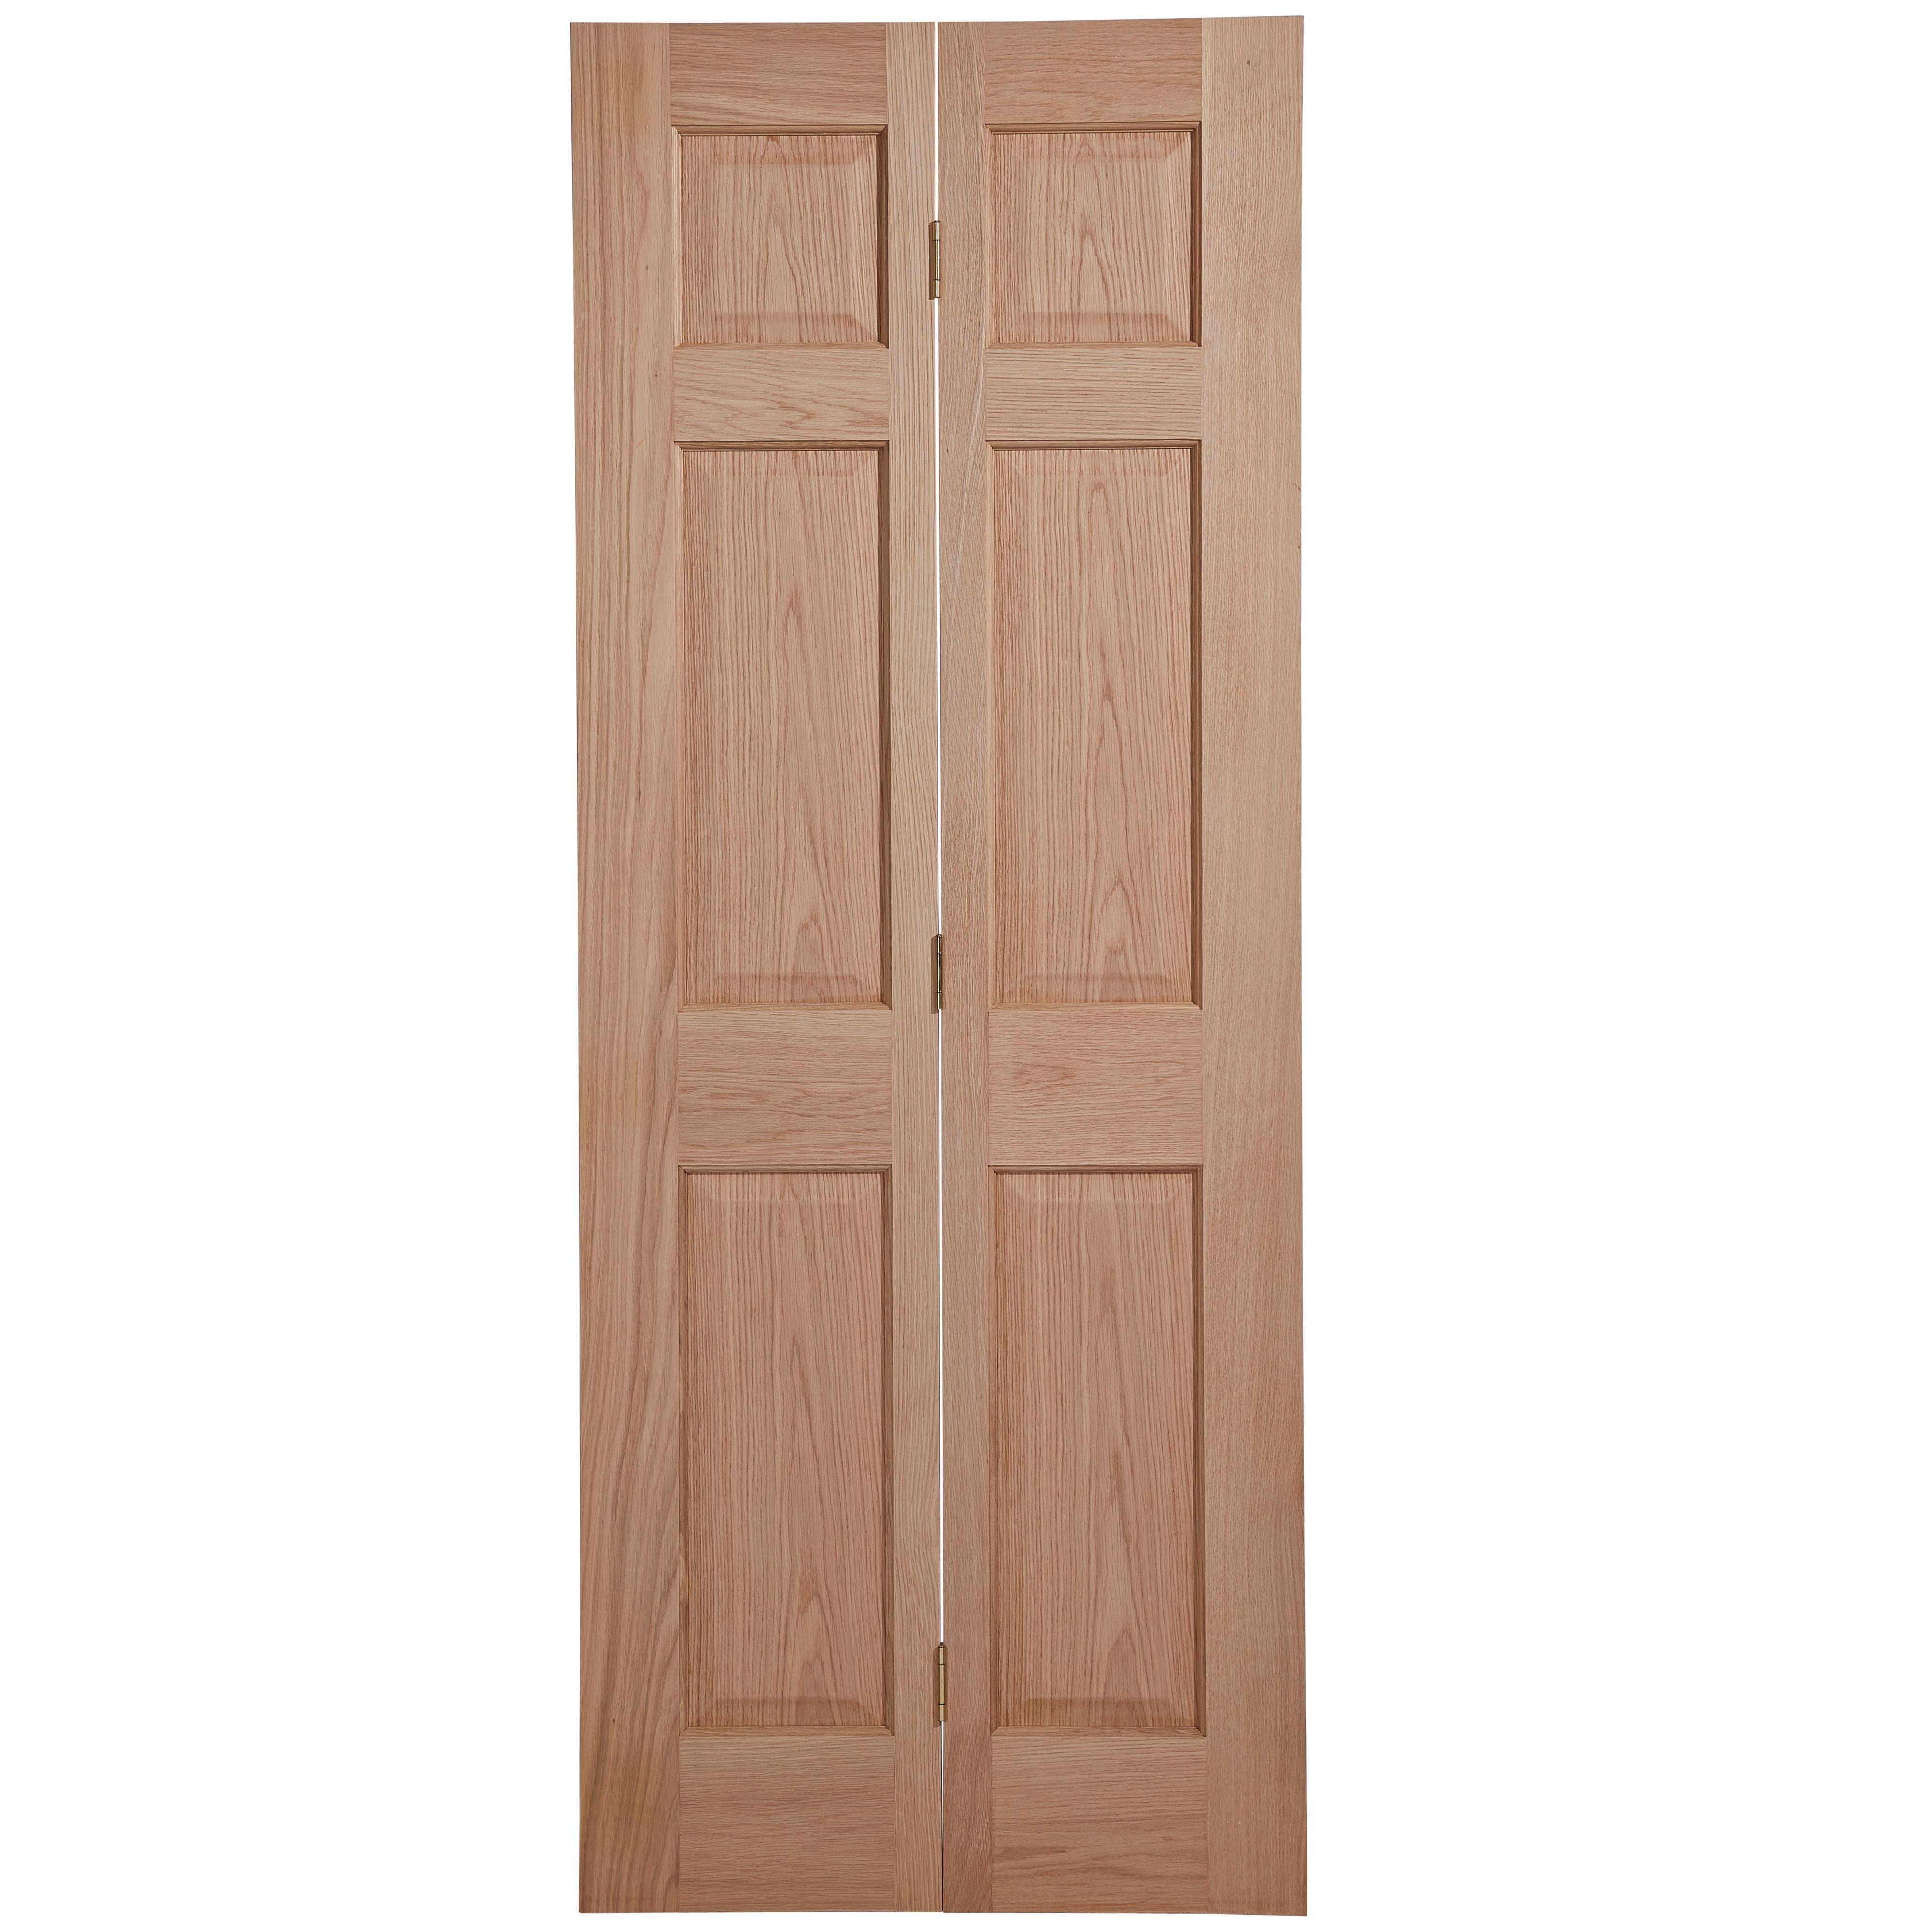 6 panel Unglazed Victorian White oak effect Timber Oak veneer Internal Bi-fold Door set, (H)1950mm (W)750mm